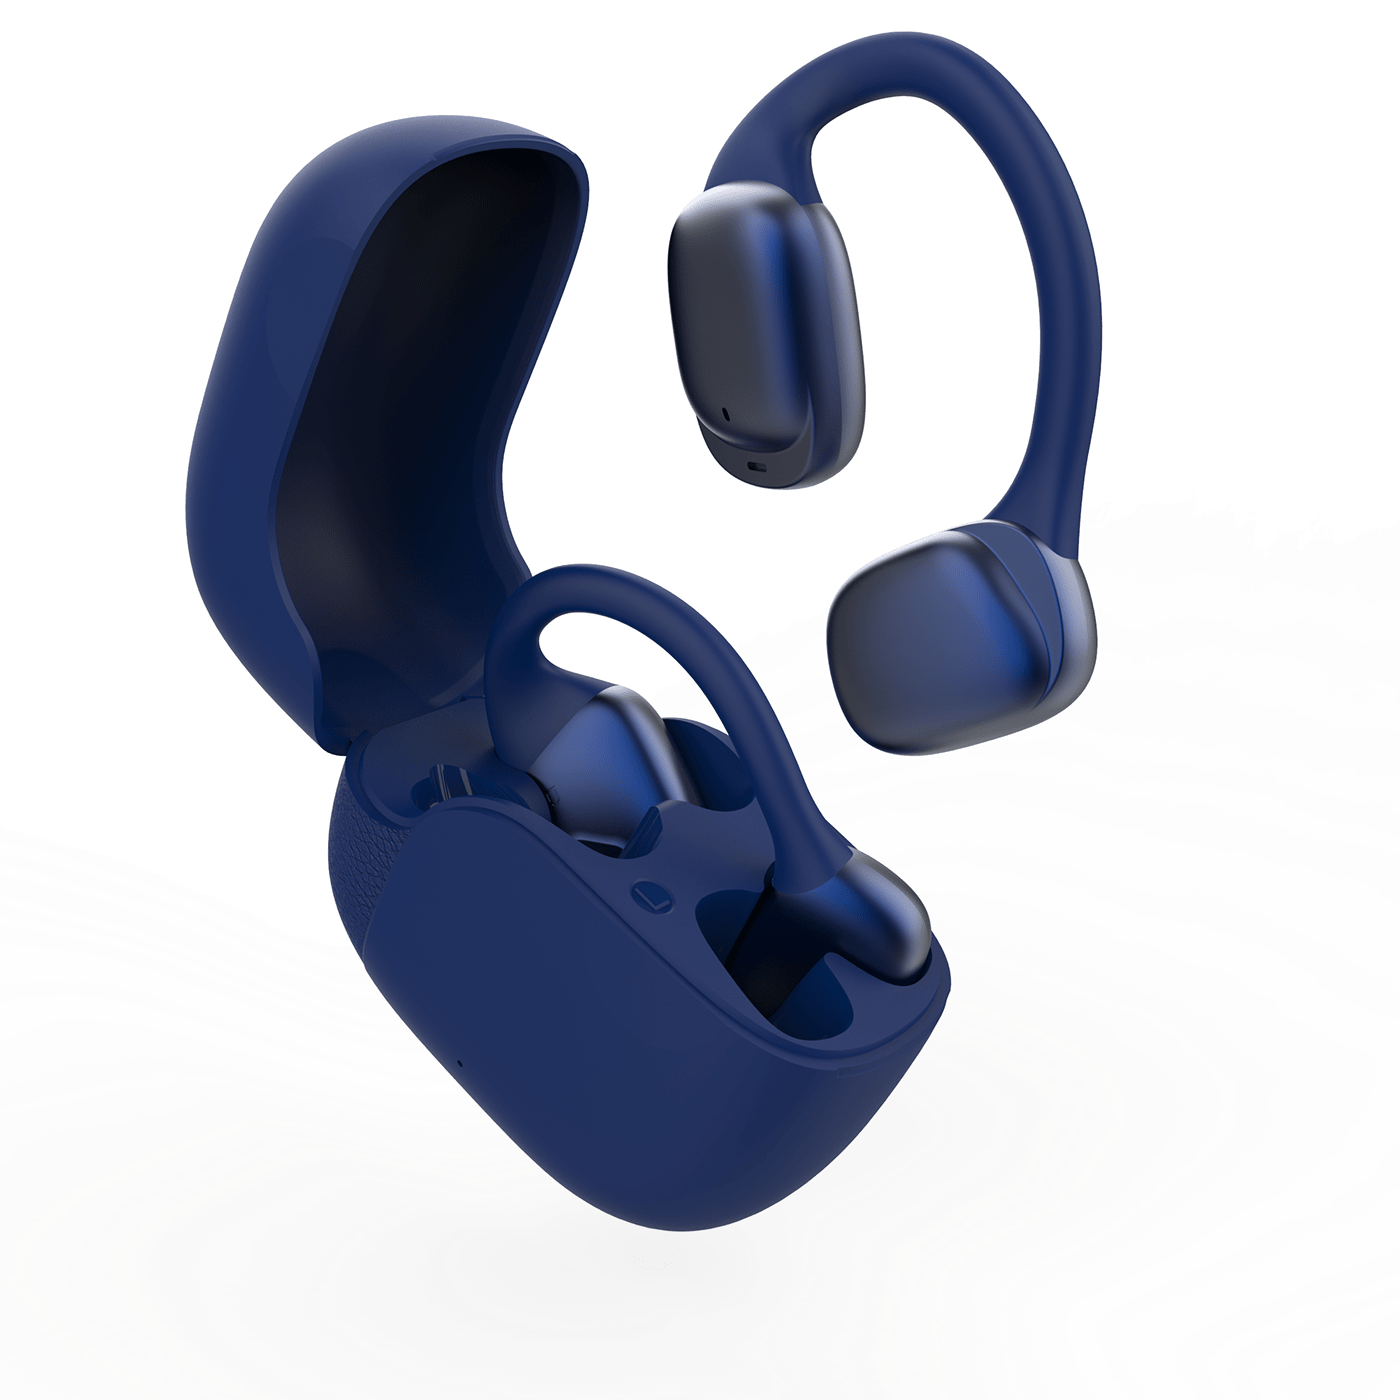 Earbuds headphones product industrial design  Render 3D modern product design  industrial design